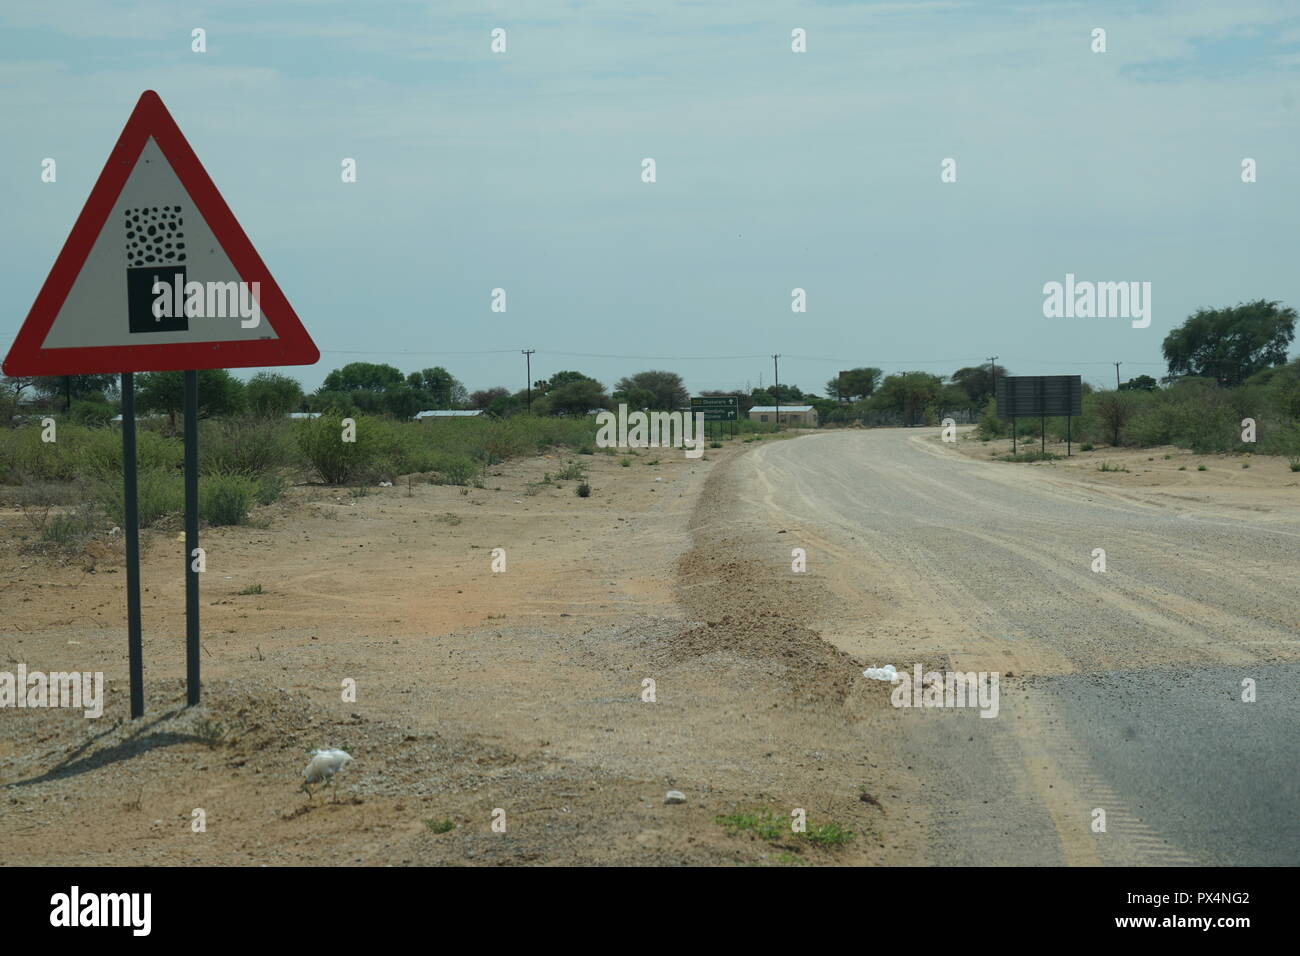 Verkehrsschild, 'Geavel Toad begins ahead', Wechsel von Teerstrasse zu Piste, Okakarara, Strasse C42, Republik Namibia, Afrika Stock Photo